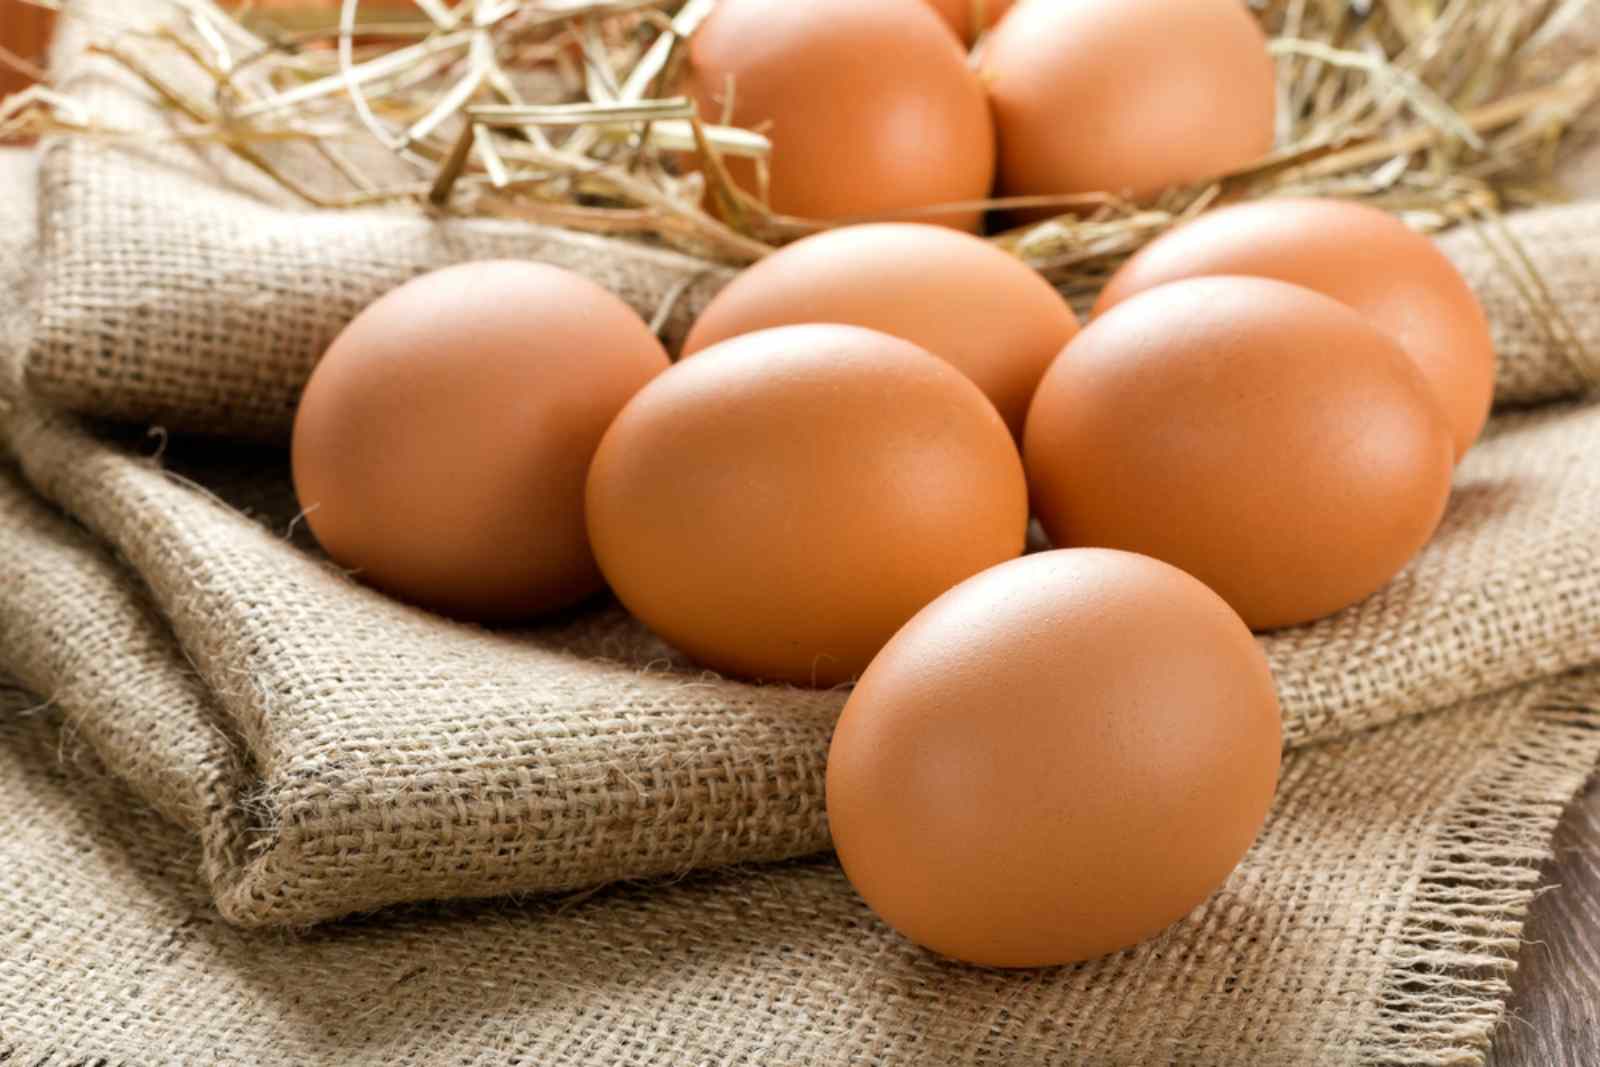 Trứng gà luôn là thực phẩm giàu chất dinh dưỡng có lợi cho cơ thể